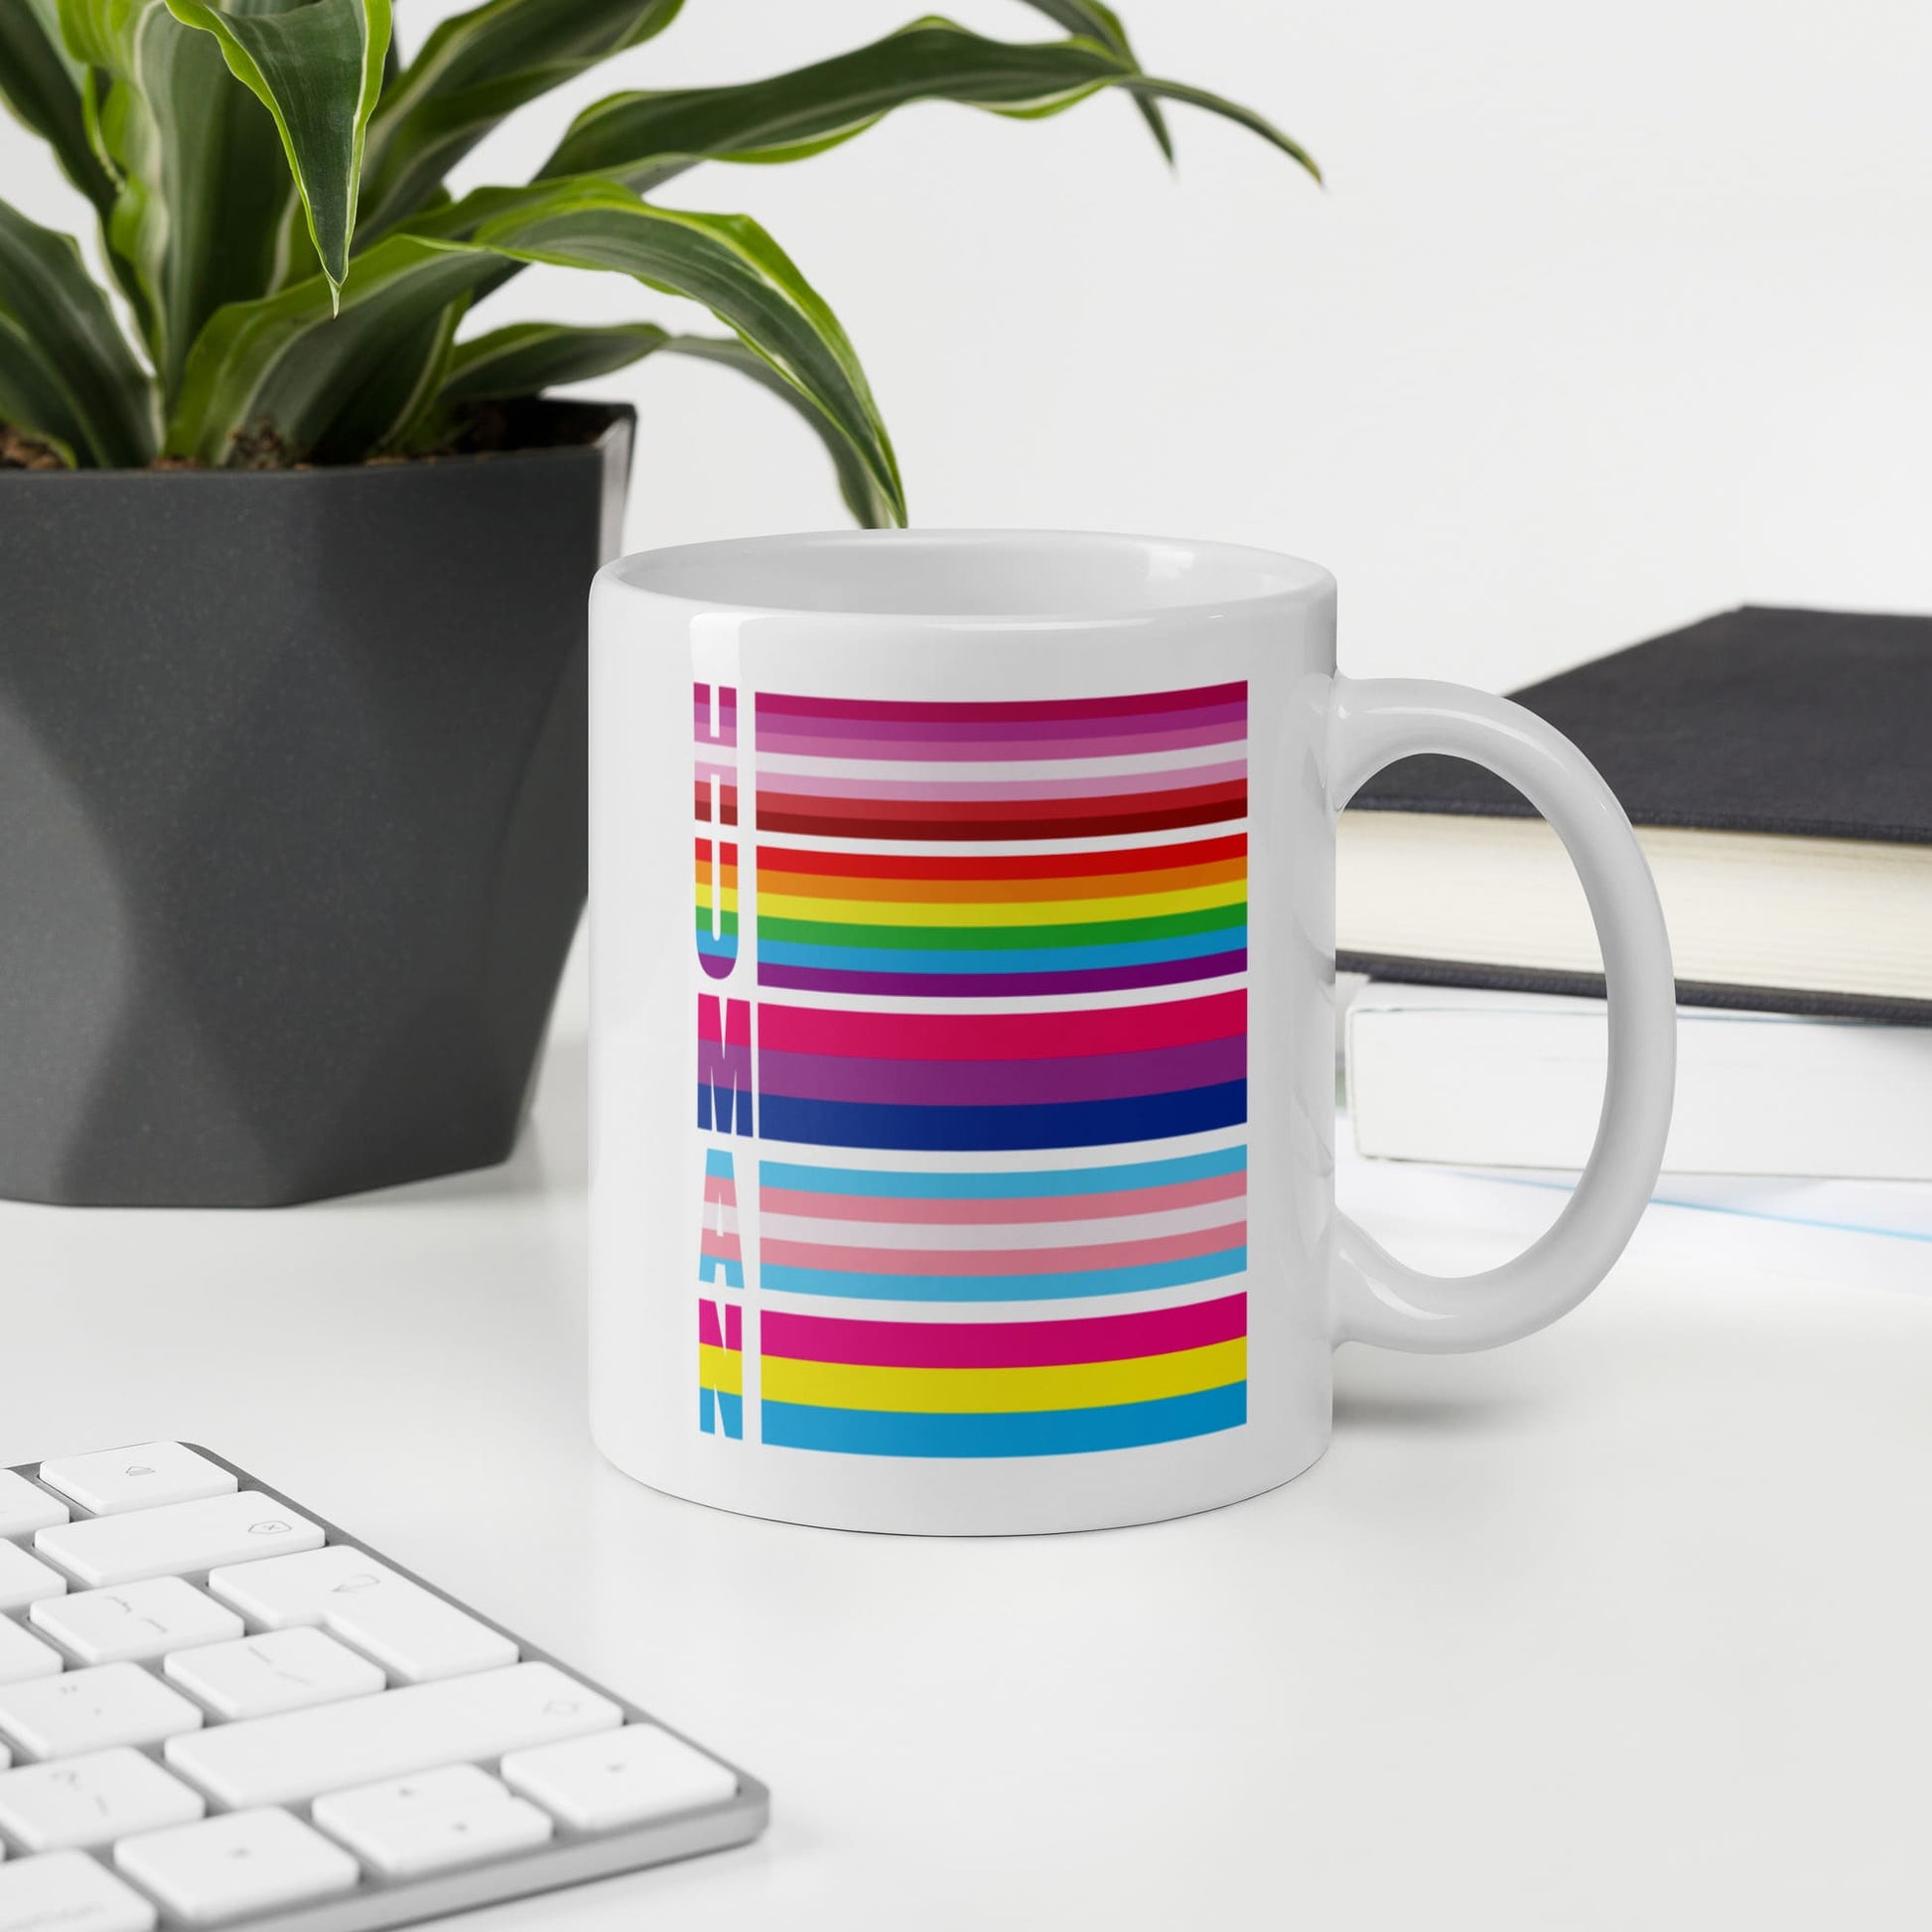 lesbian bisexual transgender pansexual mug, human LGBT pride coffee or tea cup on desk